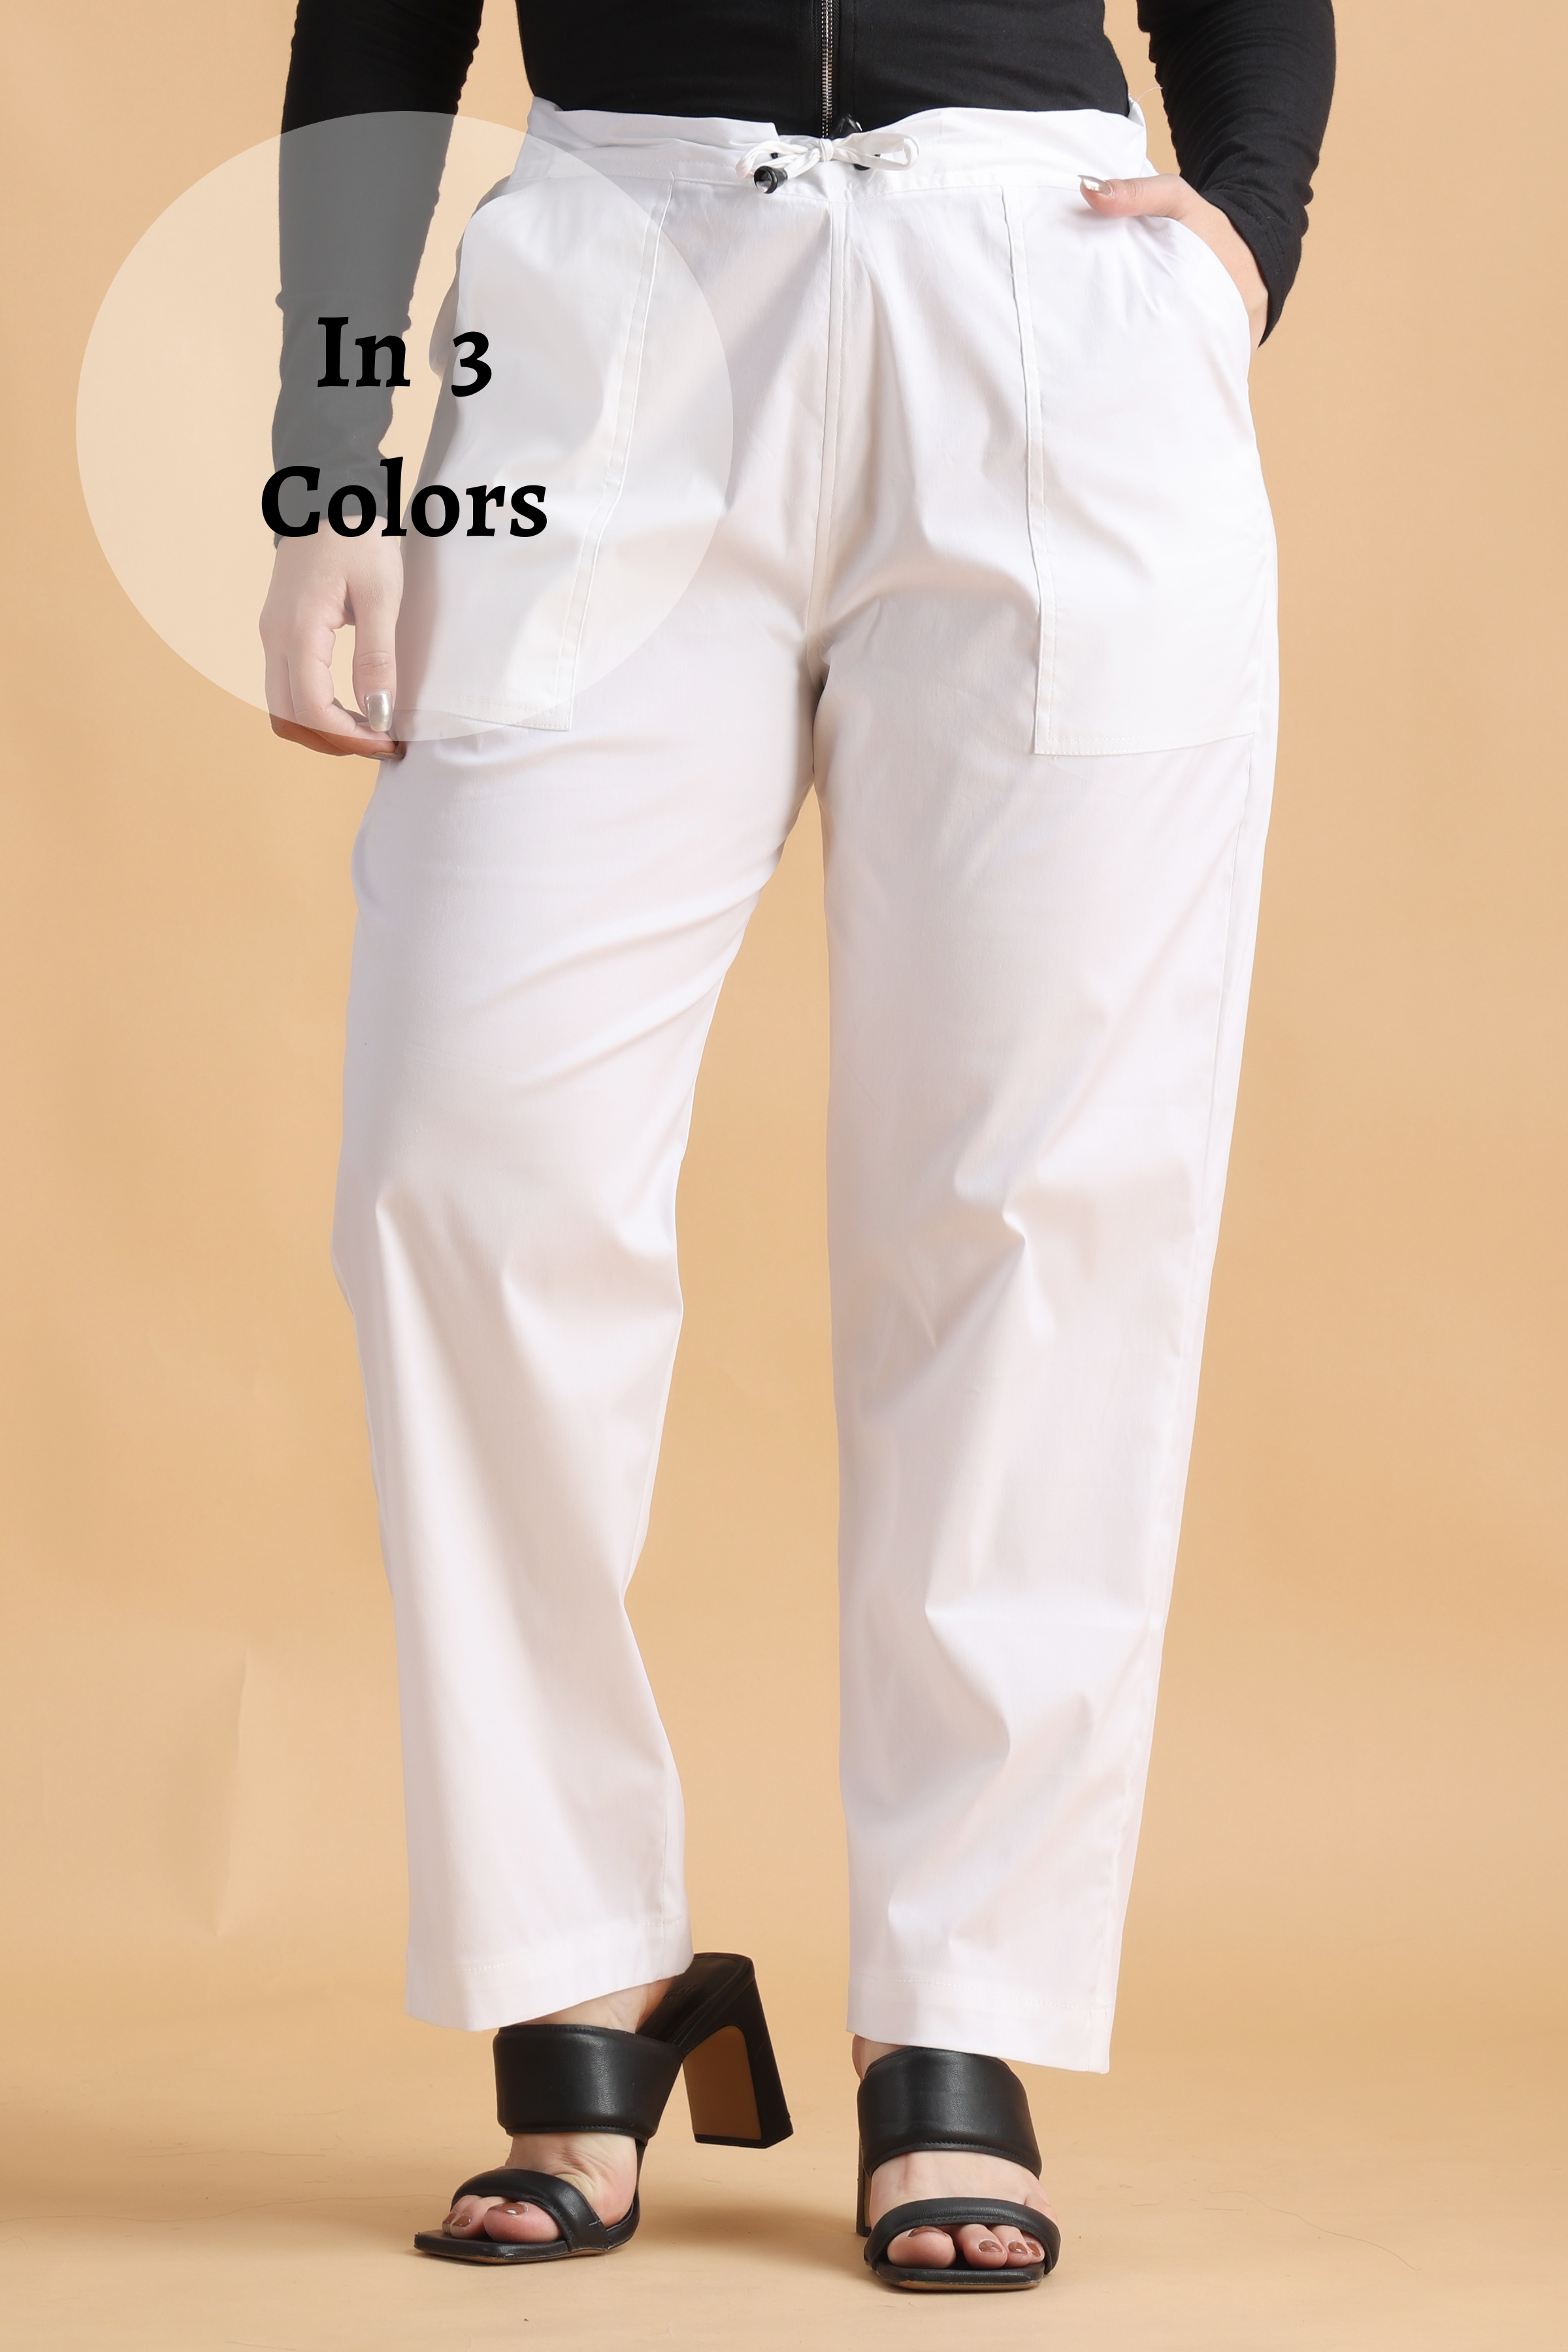 Amazon.com: A&E Designs Ladies Yoga Pants Cotton Lycra Blend, XL Black :  Clothing, Shoes & Jewelry